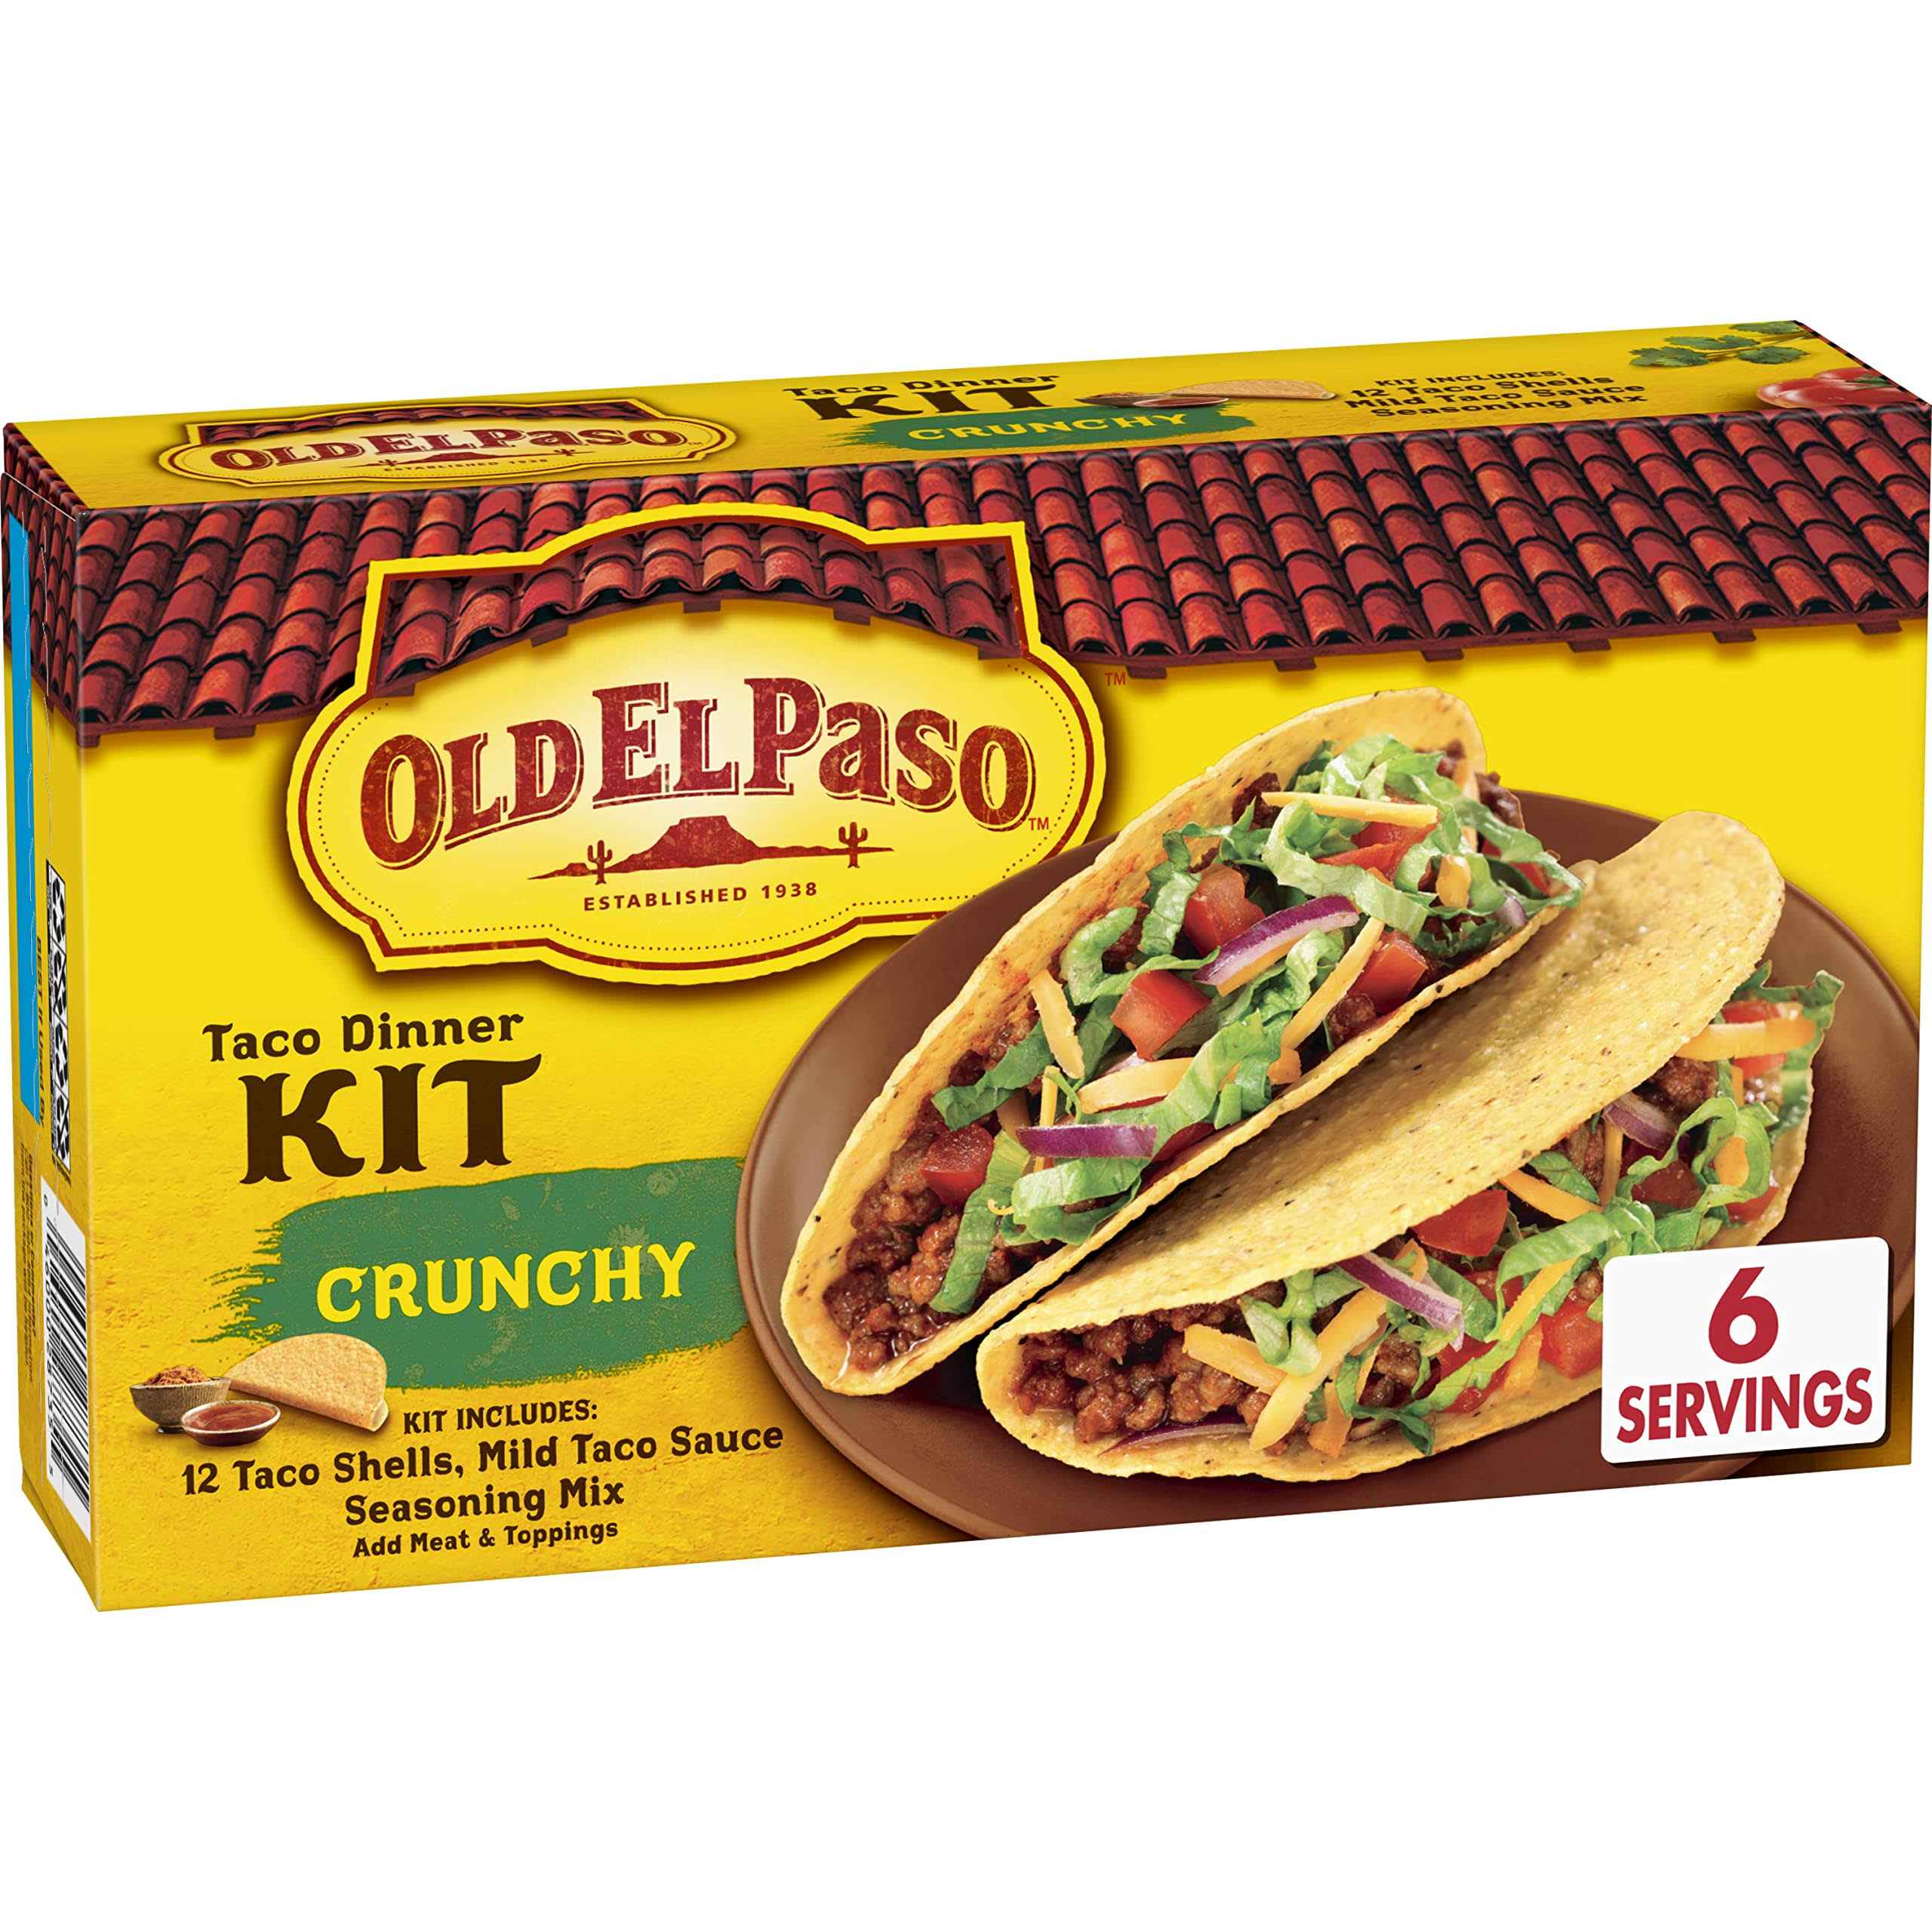 Old El Paso Crunchy Taco Dinner Kit - 8.8oz